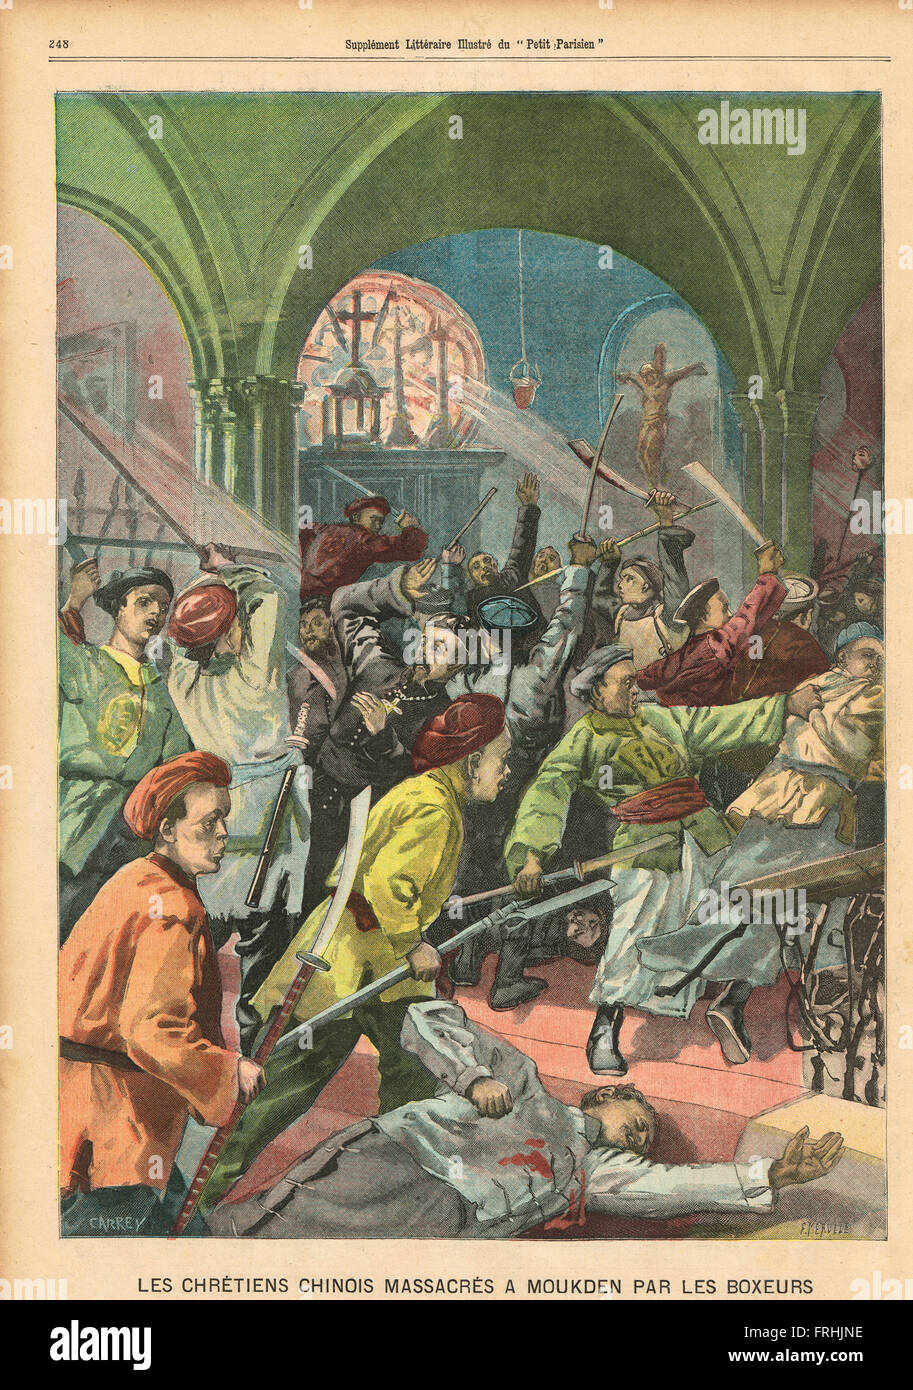 Les chrétiens chinois ont massacré à Mukden (aujourd'hui Shenyang) 1900. Illustration du petit parisien dans le journal français illustré Banque D'Images